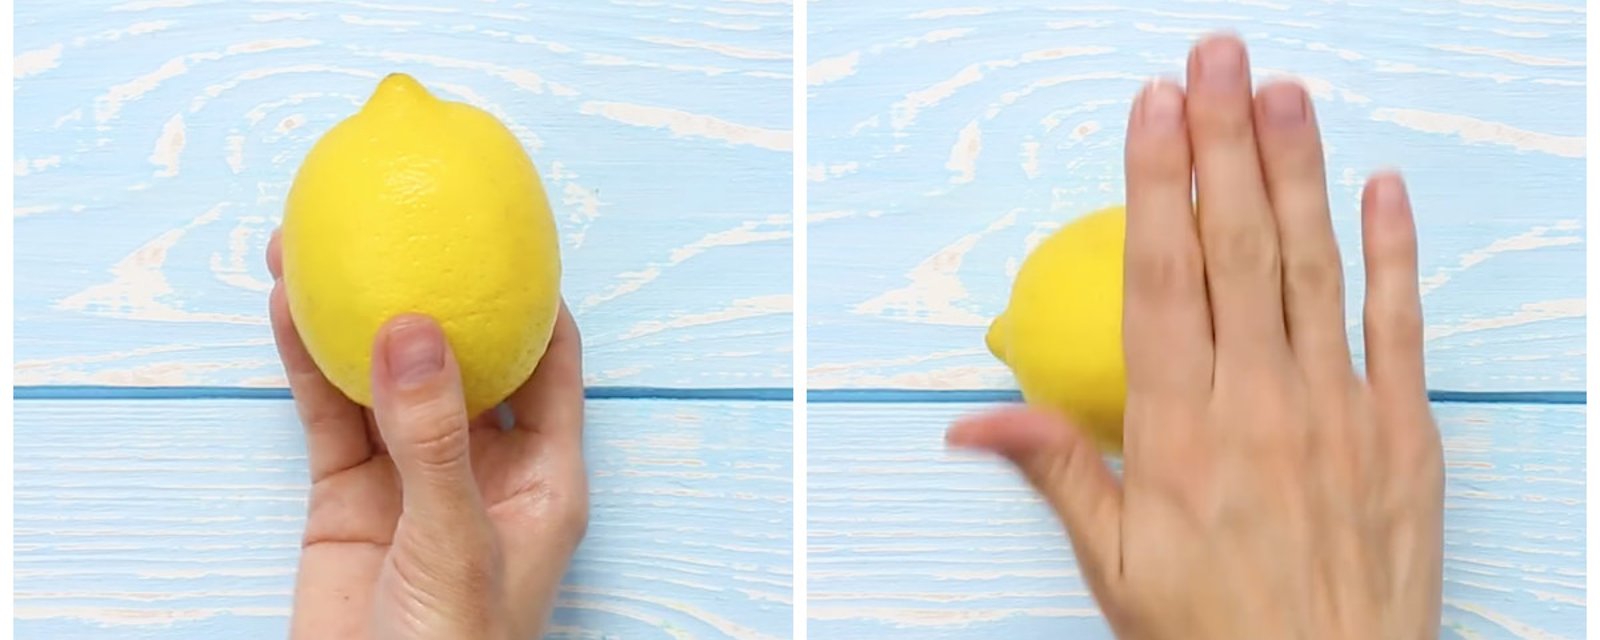 Elle sort un citron et le roule sous sa main durant quelques secondes. Ce qu’elle fait ensuite est complètement inattendu!